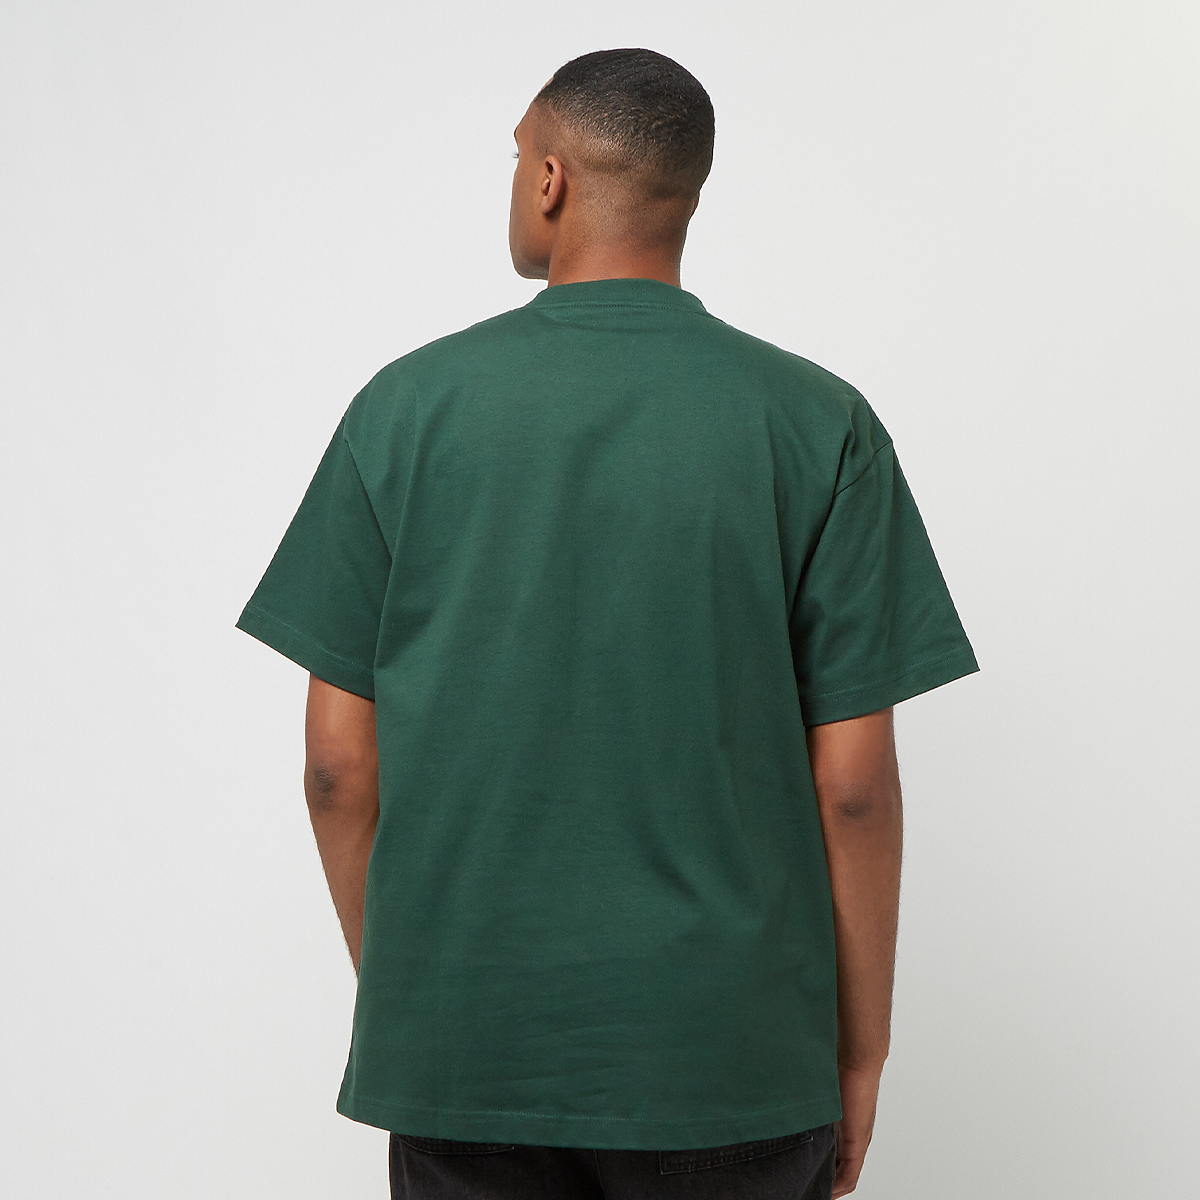 Carhartt WIP S s Bubbles T-shirt T-shirts Heren discovery green green maat: L beschikbare maaten:S M L XL